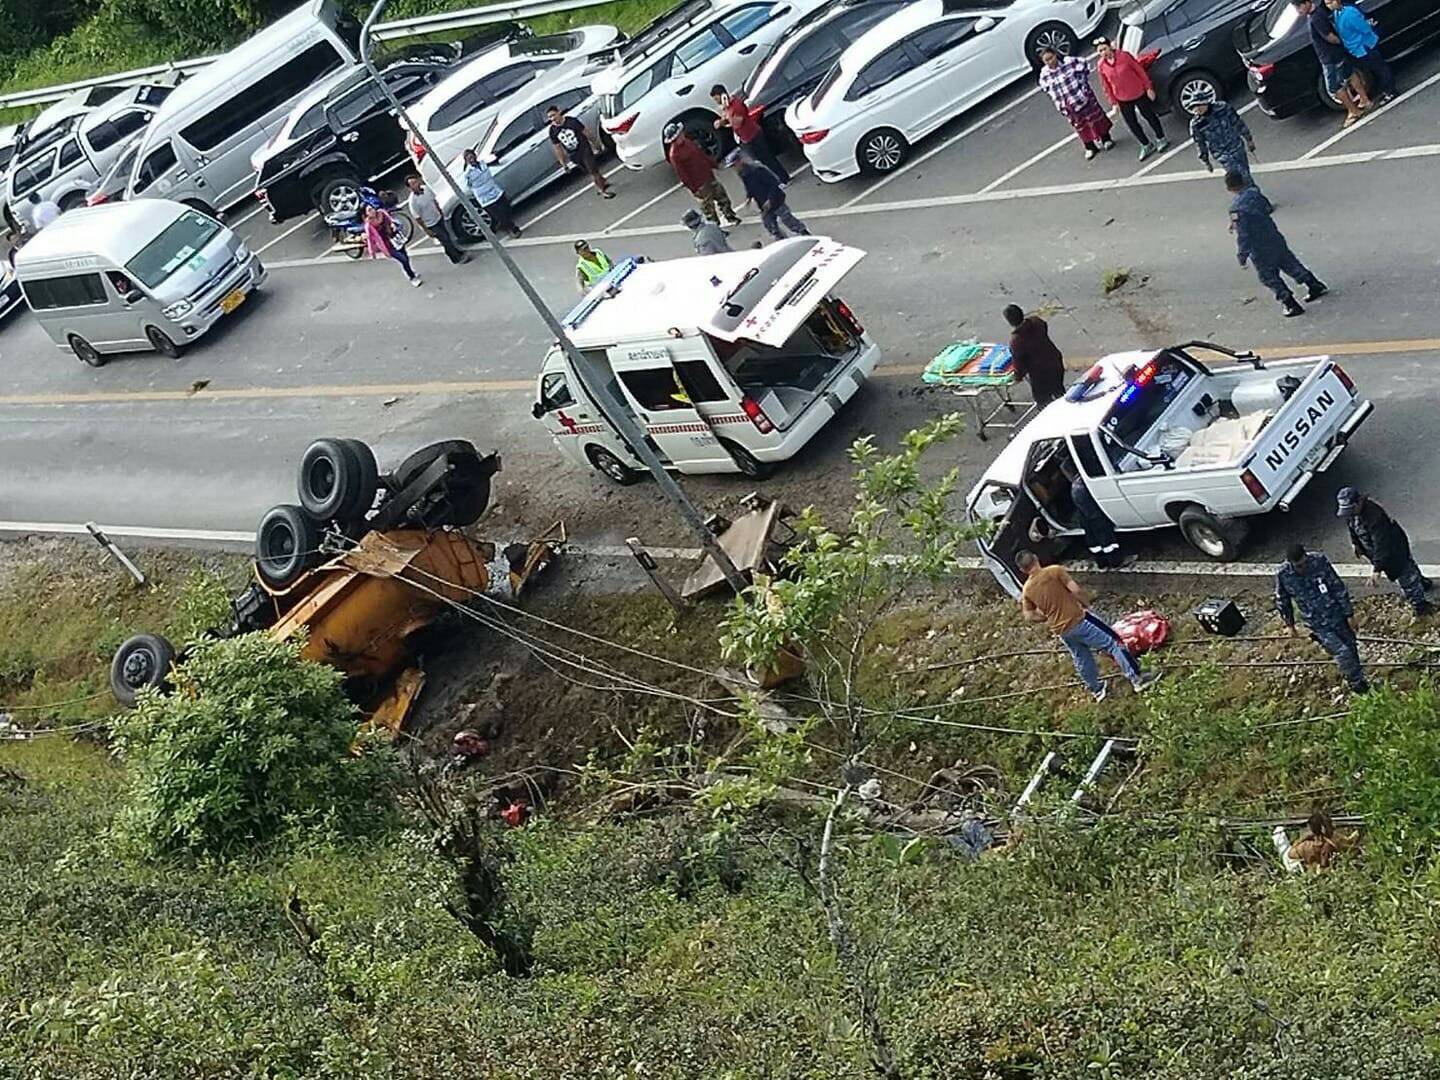 เกิดอุบัติเหตุรถพลิกคว่ำมีผู้เสียชีวิตและบาดเจ็บระหว่างเส้นทางขึ้นดอยอินทนนท์